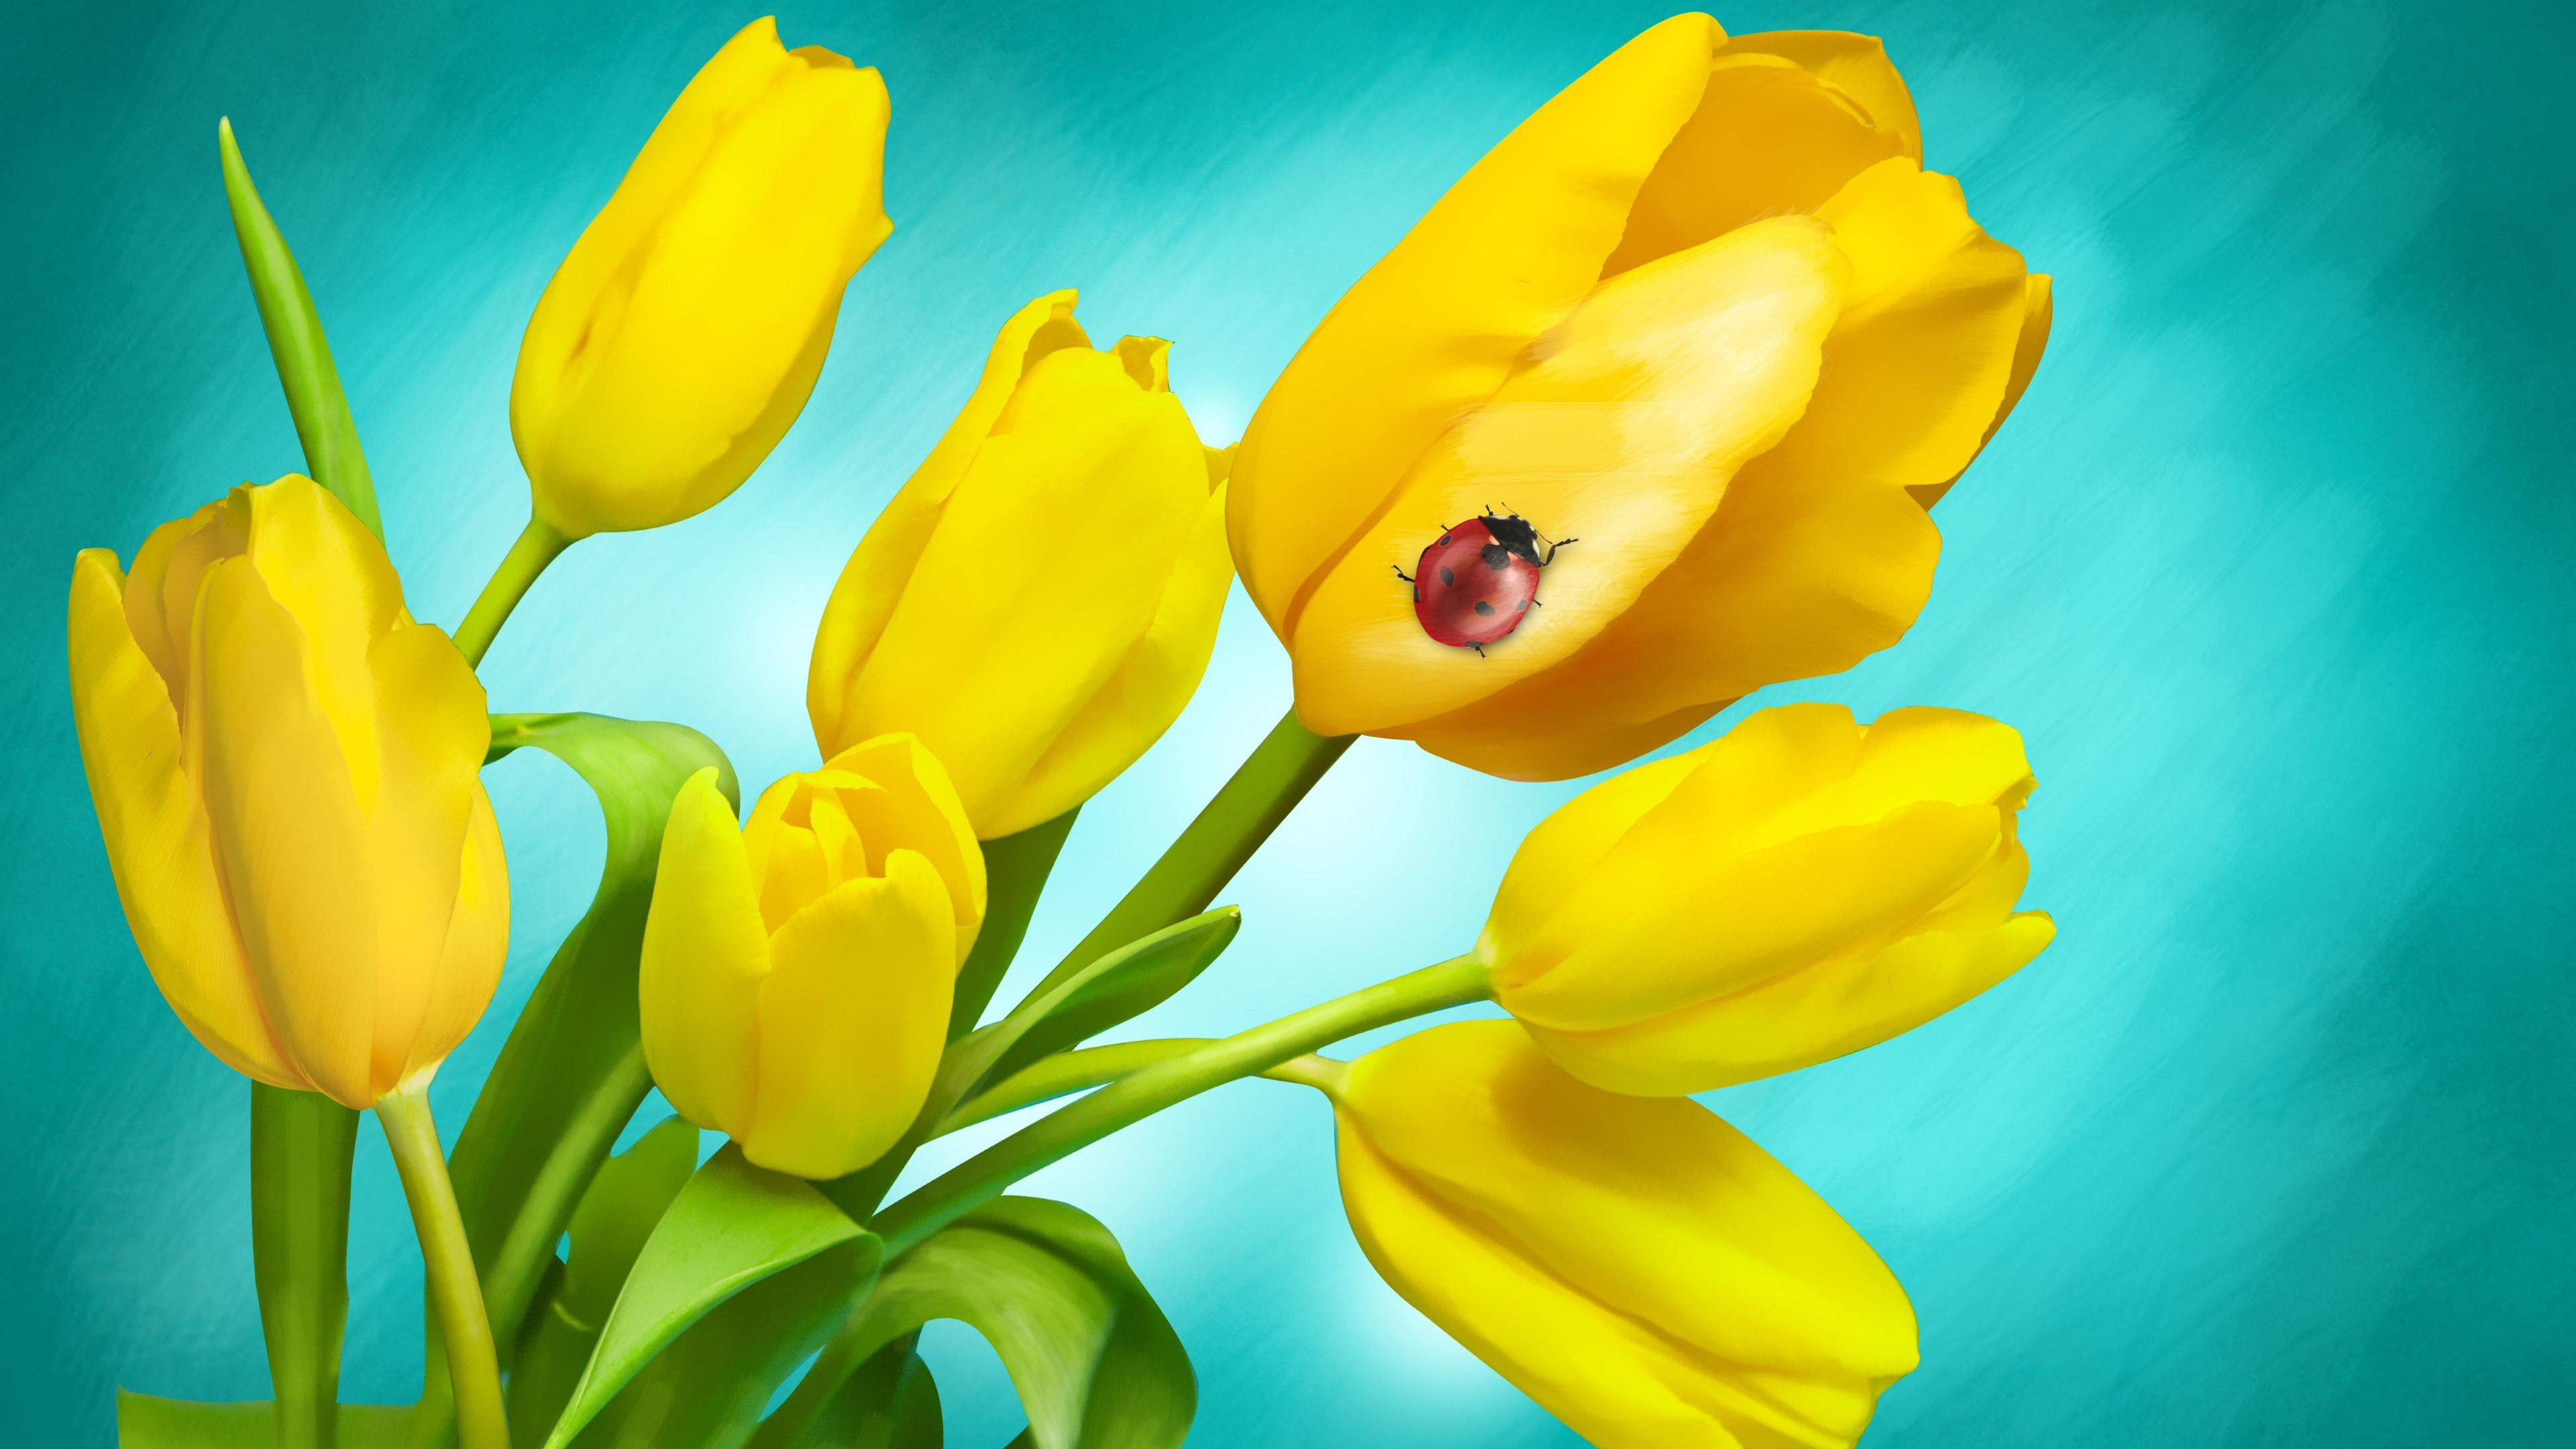 Ladybird on yellow tulips wallpaper 3840x2160